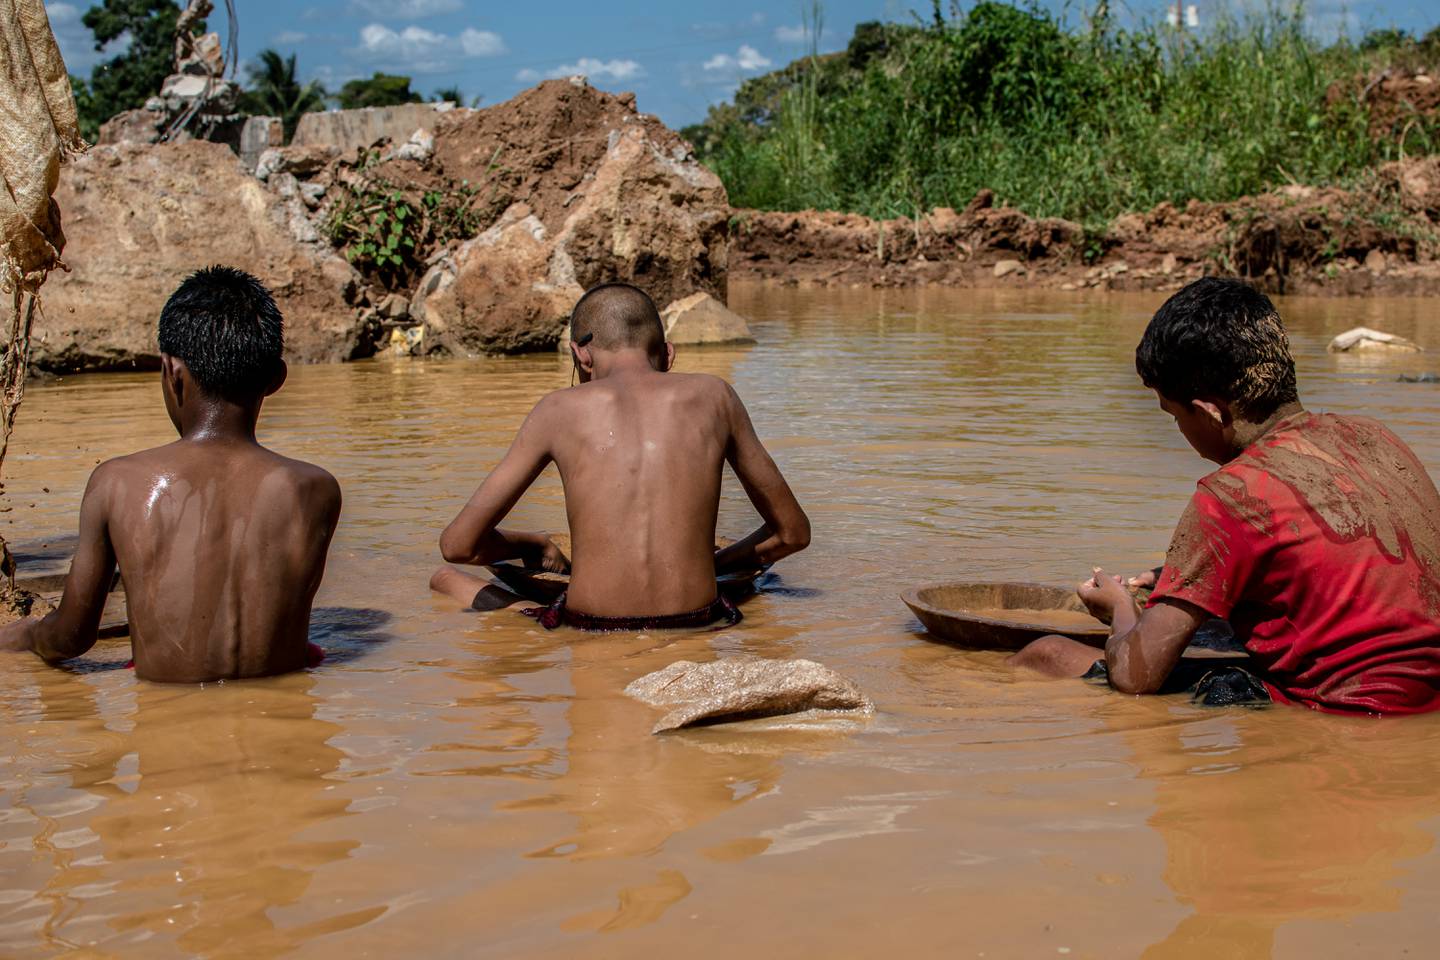 En el pueblo de El Callao, extraer oro del suelo comienza como un juego de niños, pero pronto se convierte en un trabajo de tiempo completo que, según los activistas de derechos humanos, equivale a explotación infantil.